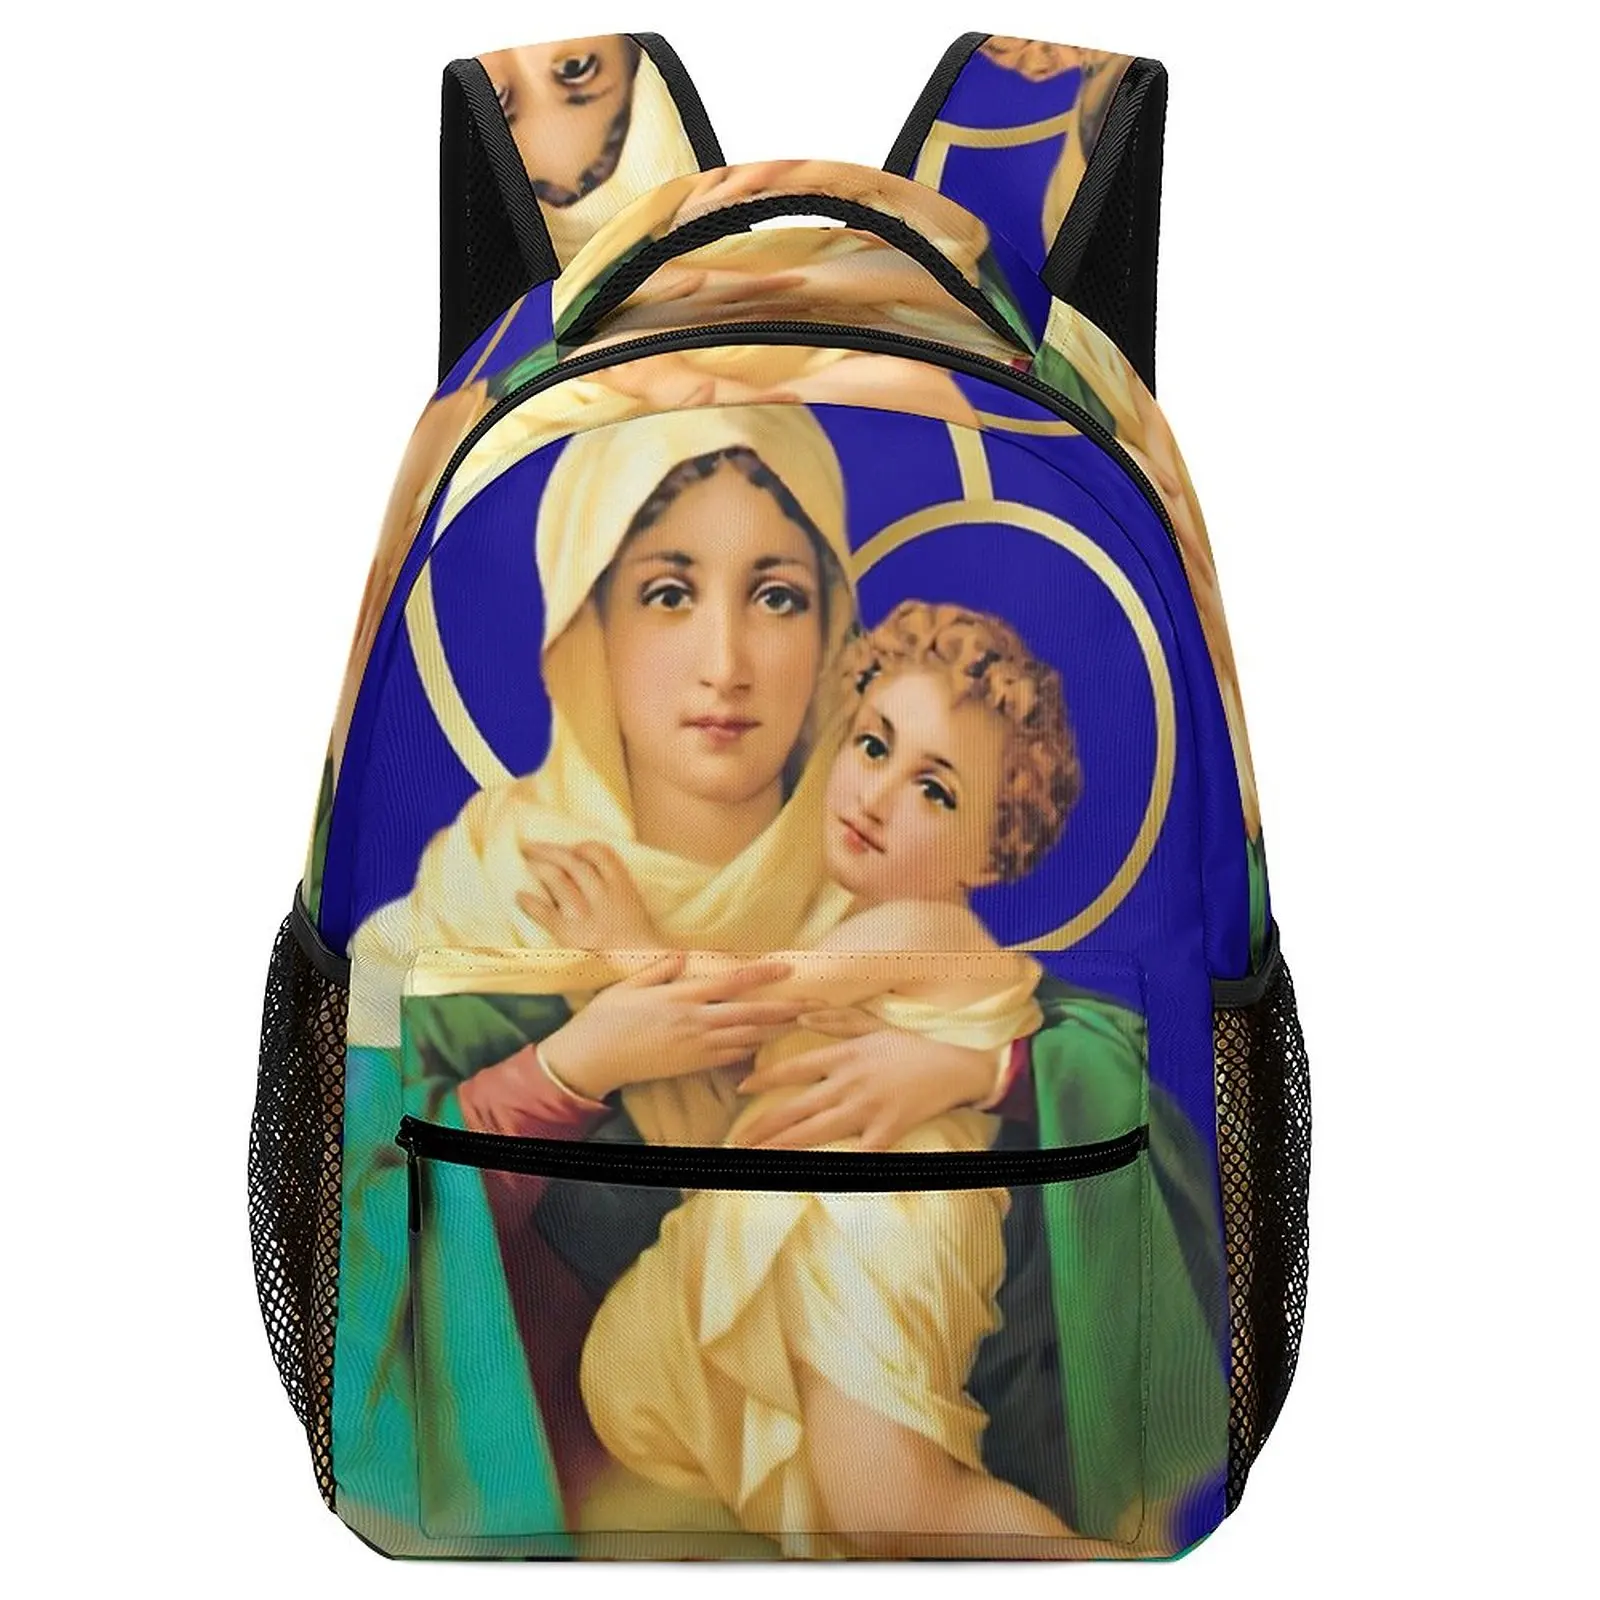 2022 Art Our Lady of Schoenstatt Virgin Mary Catholic Saint 2020-020 Backpack Child 3 Years for Children Kids Teen Bag Children